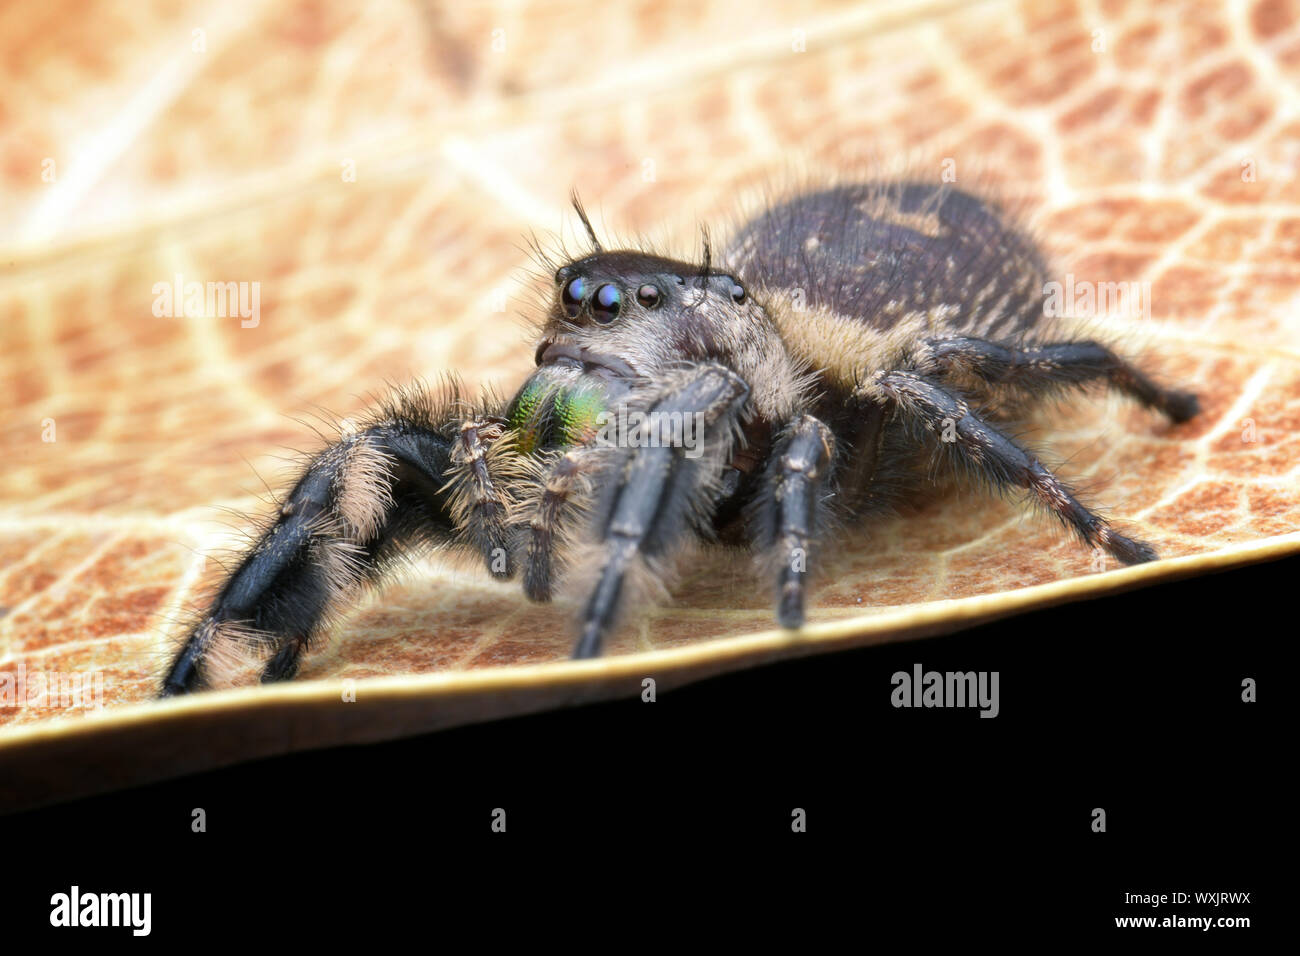 Nahaufnahme eines springenden Spinne auf einem Blatt, Indonesien Stockfoto